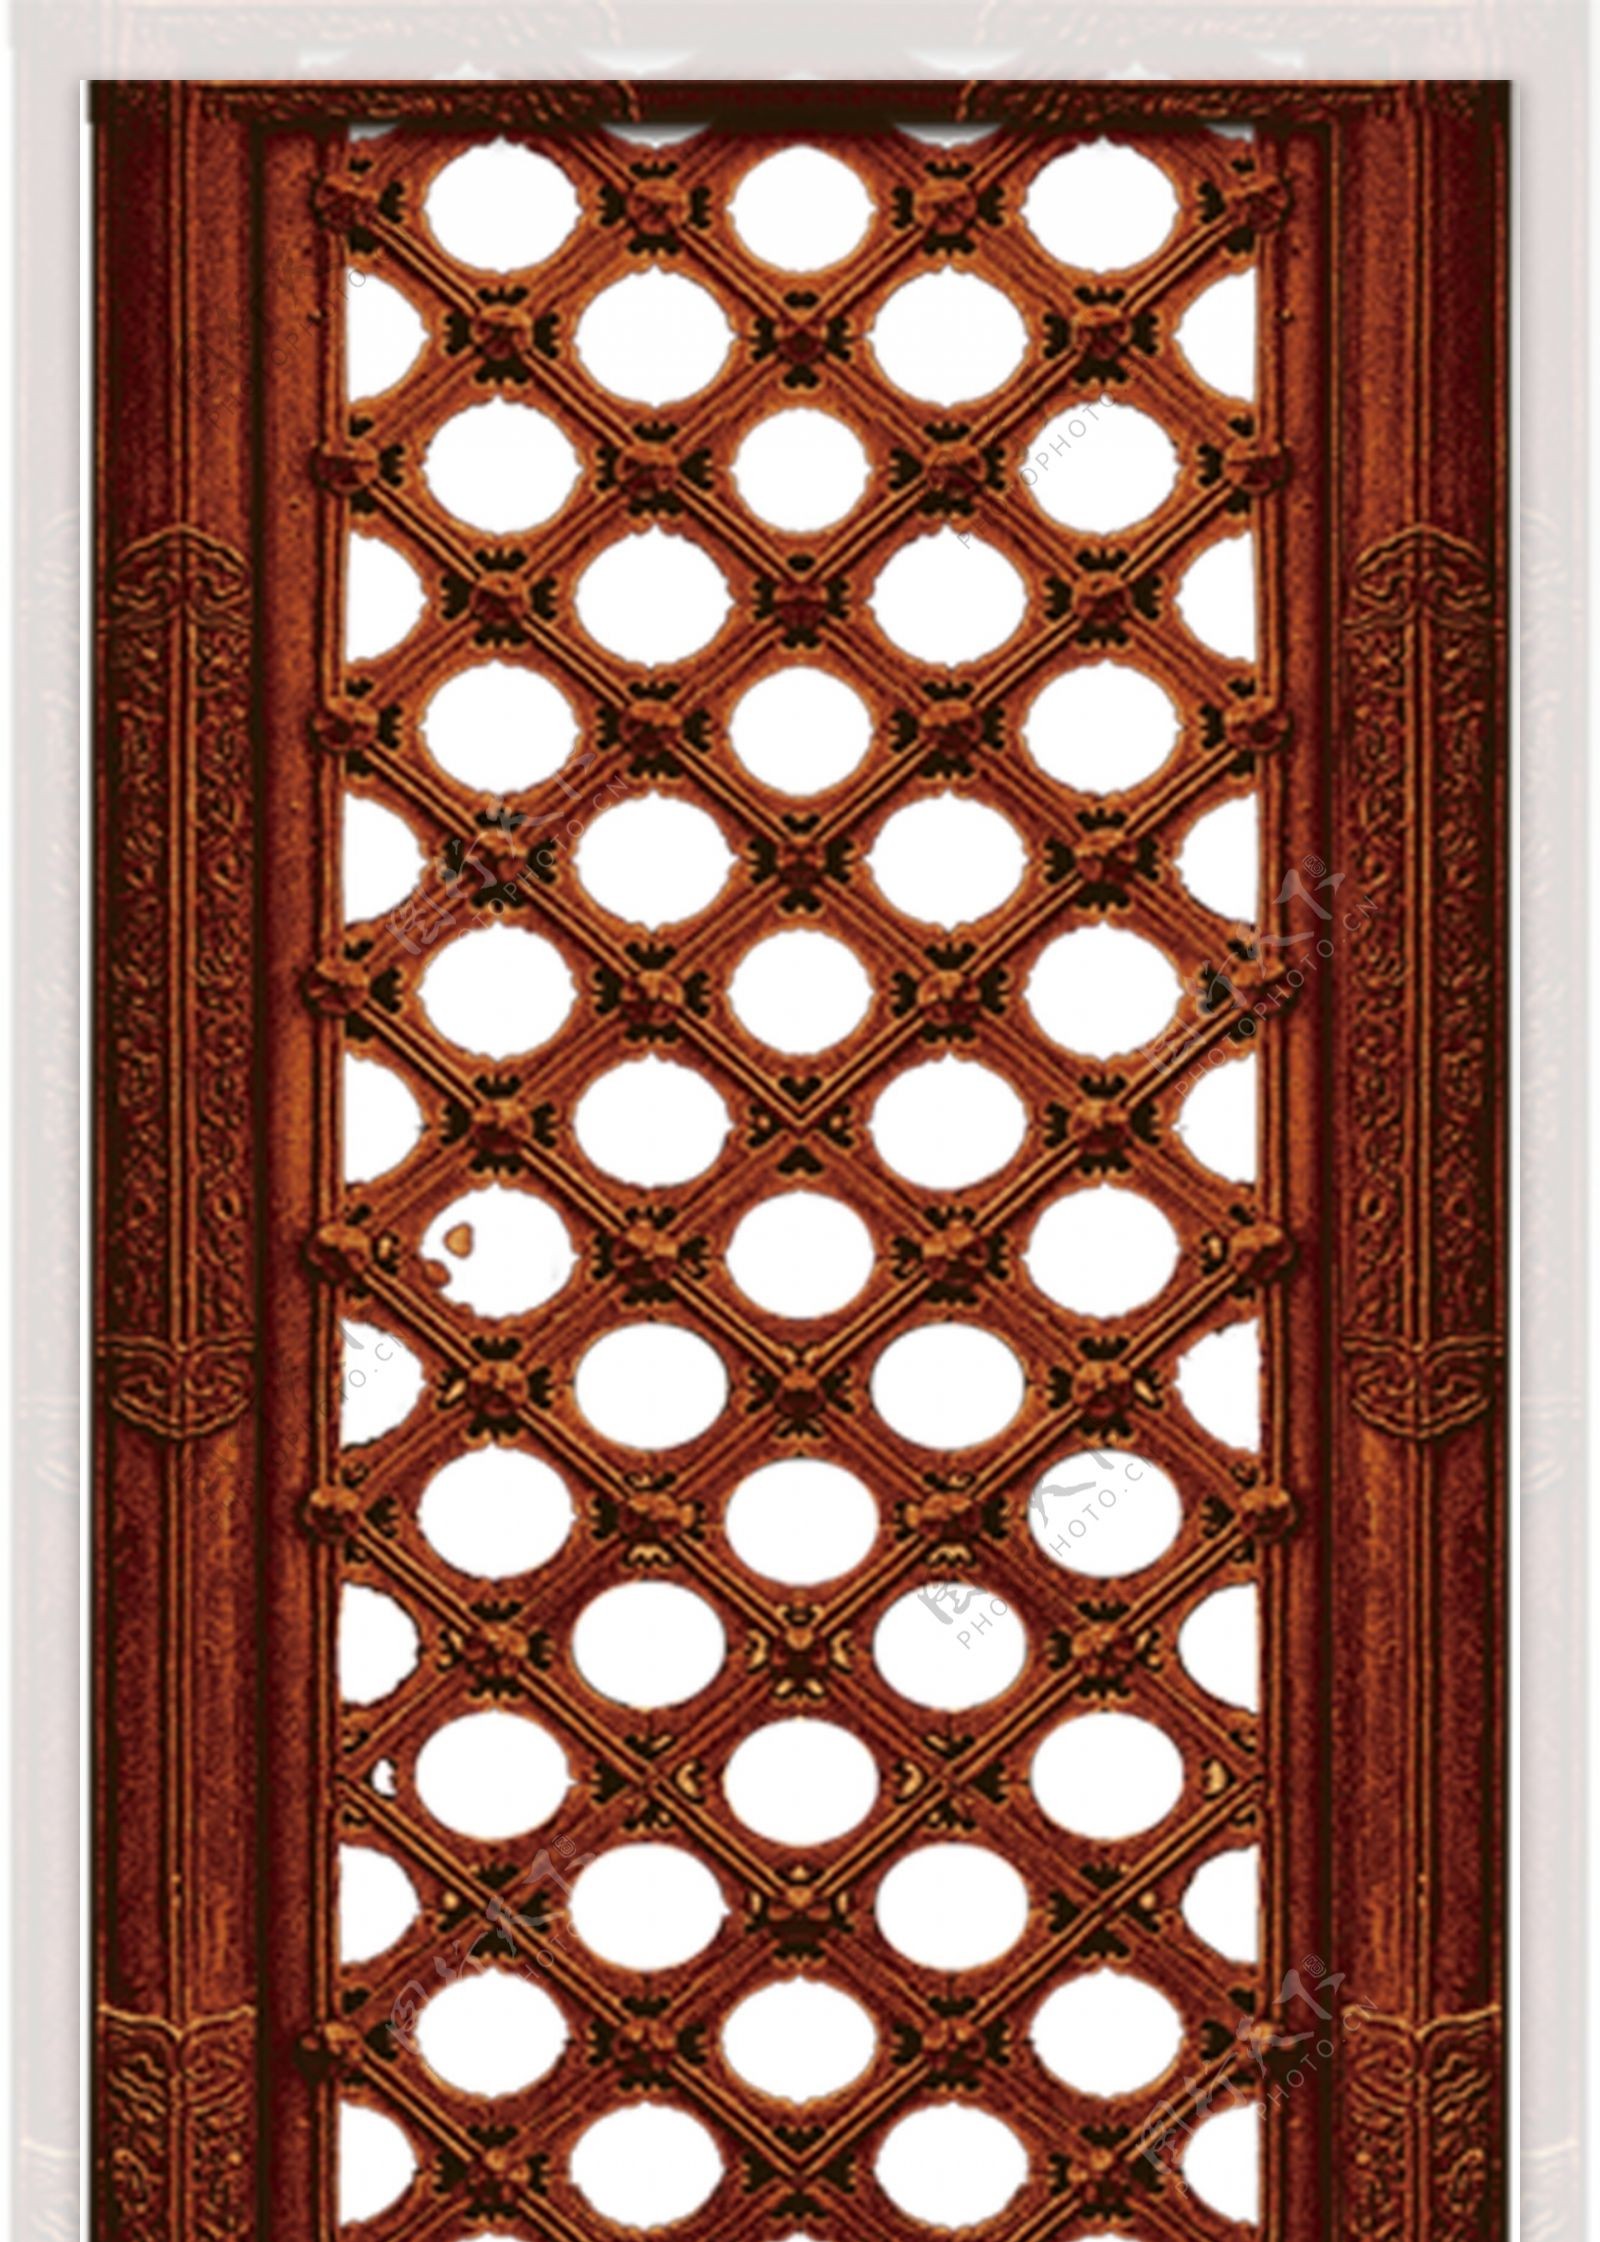 古典单扇雕刻花纹木门